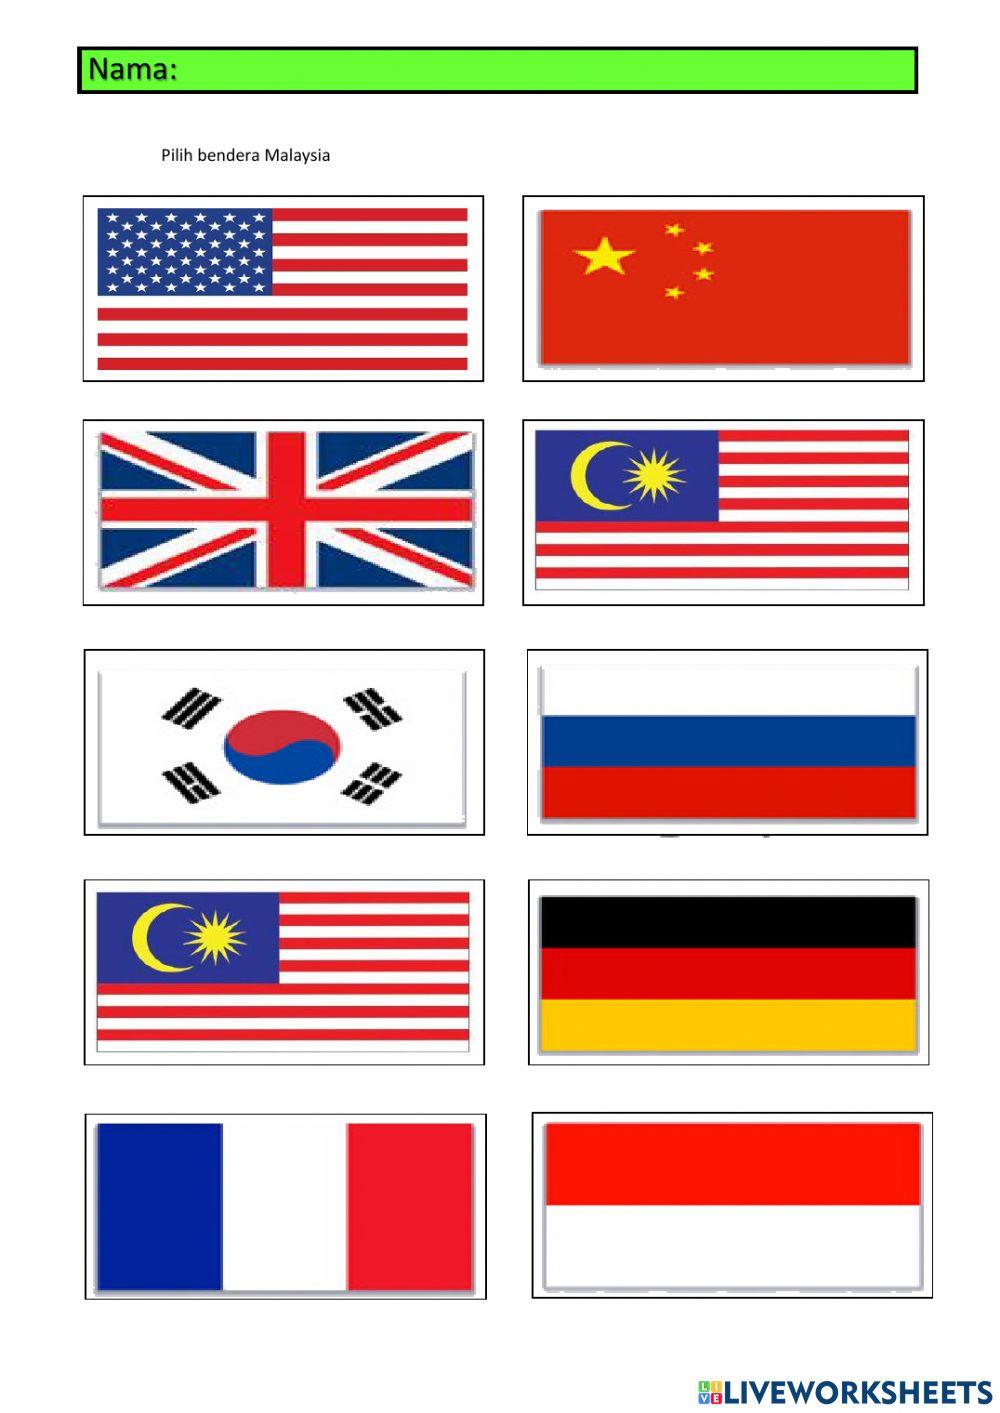 Cari bendera malaysia